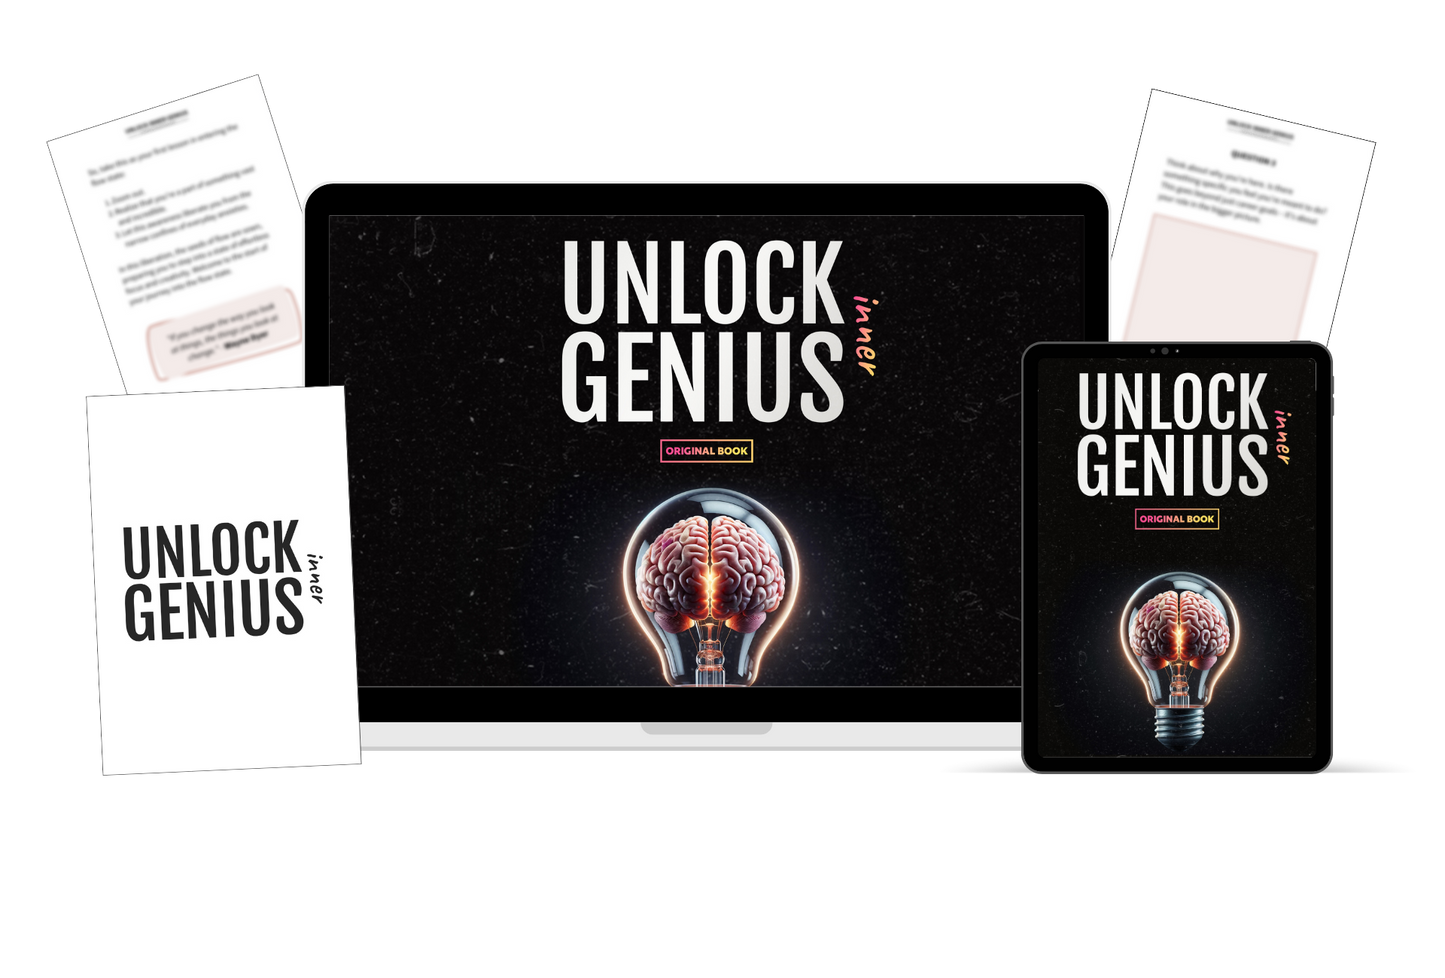 Unlock Inner Genius Packages